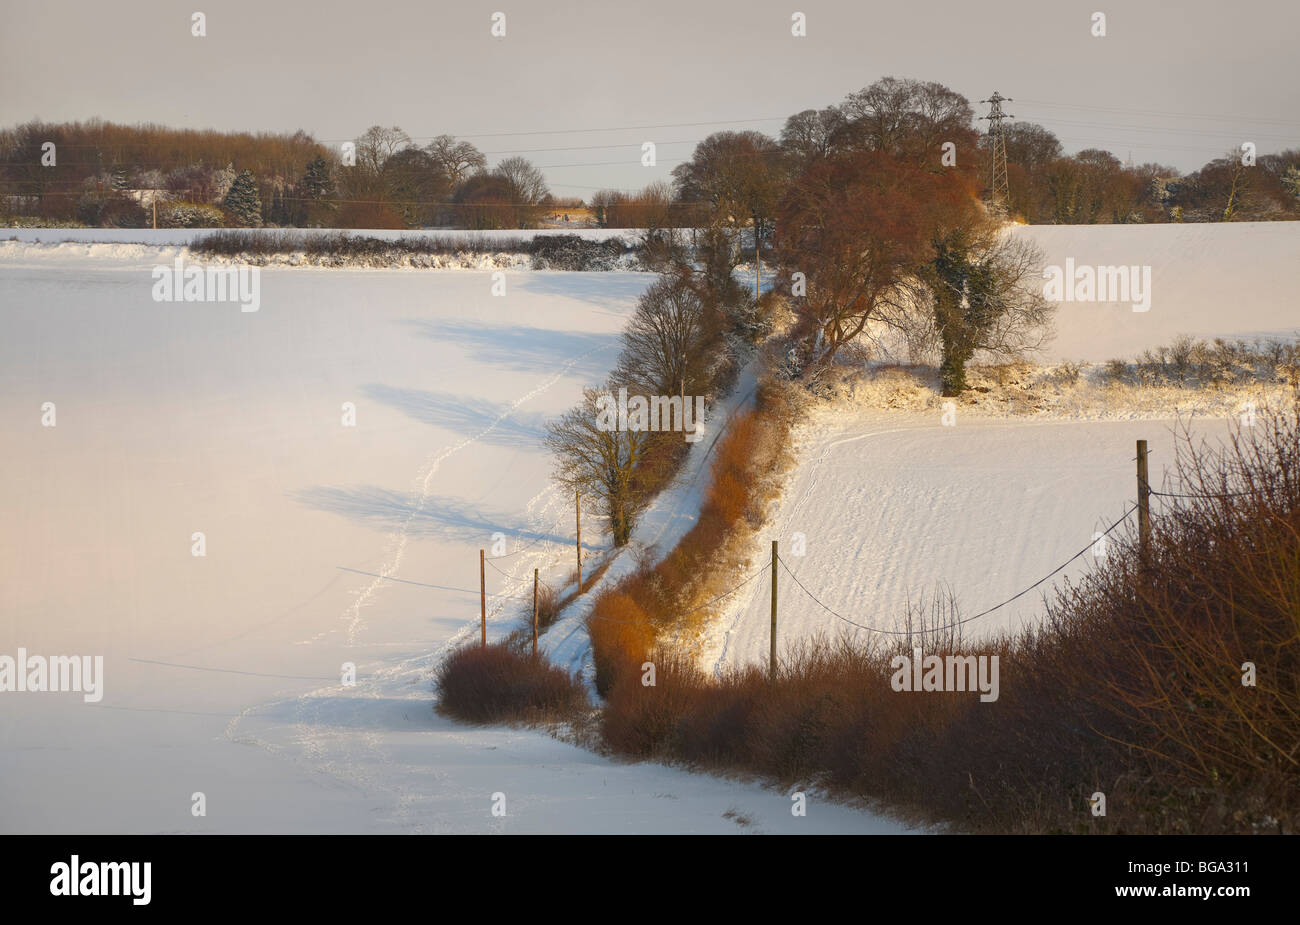 Ländliche Schnee Landschaft, Bedfordshire, von Bäumen gesäumten Feldweg, warmen Sommer Sonne geringer Schattenwurf auf Schnee. Stockfoto